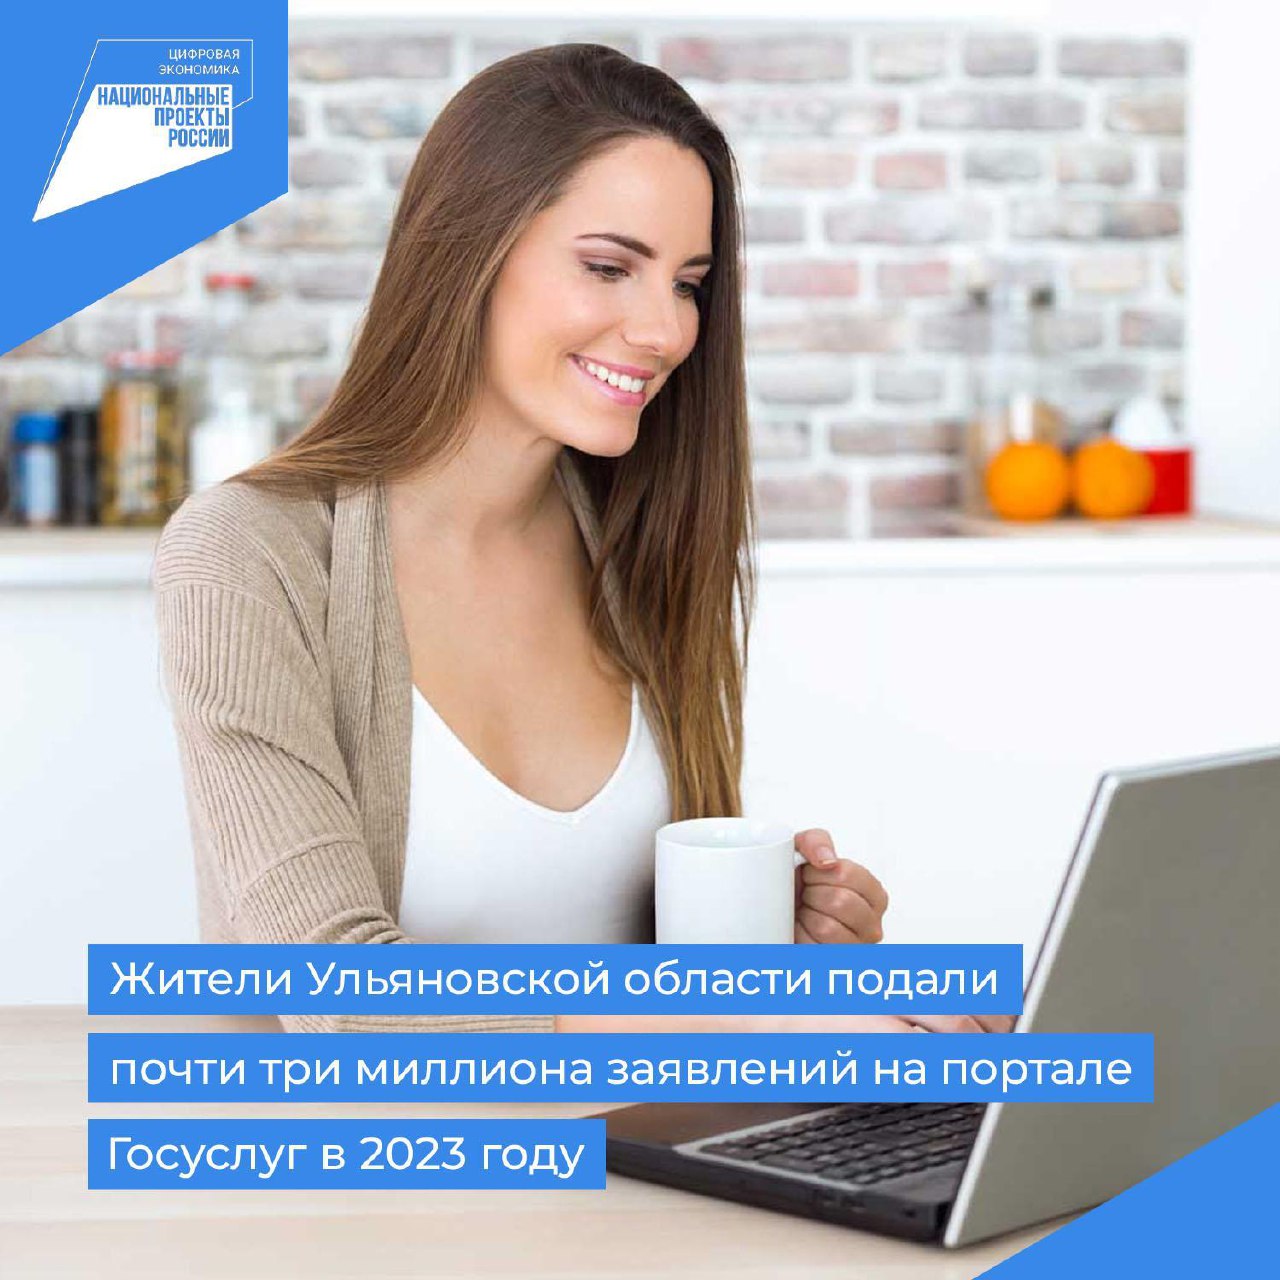 Жители Ульяновской области подали почти три миллиона заявлений на портале Госуслуг в 2023 году.